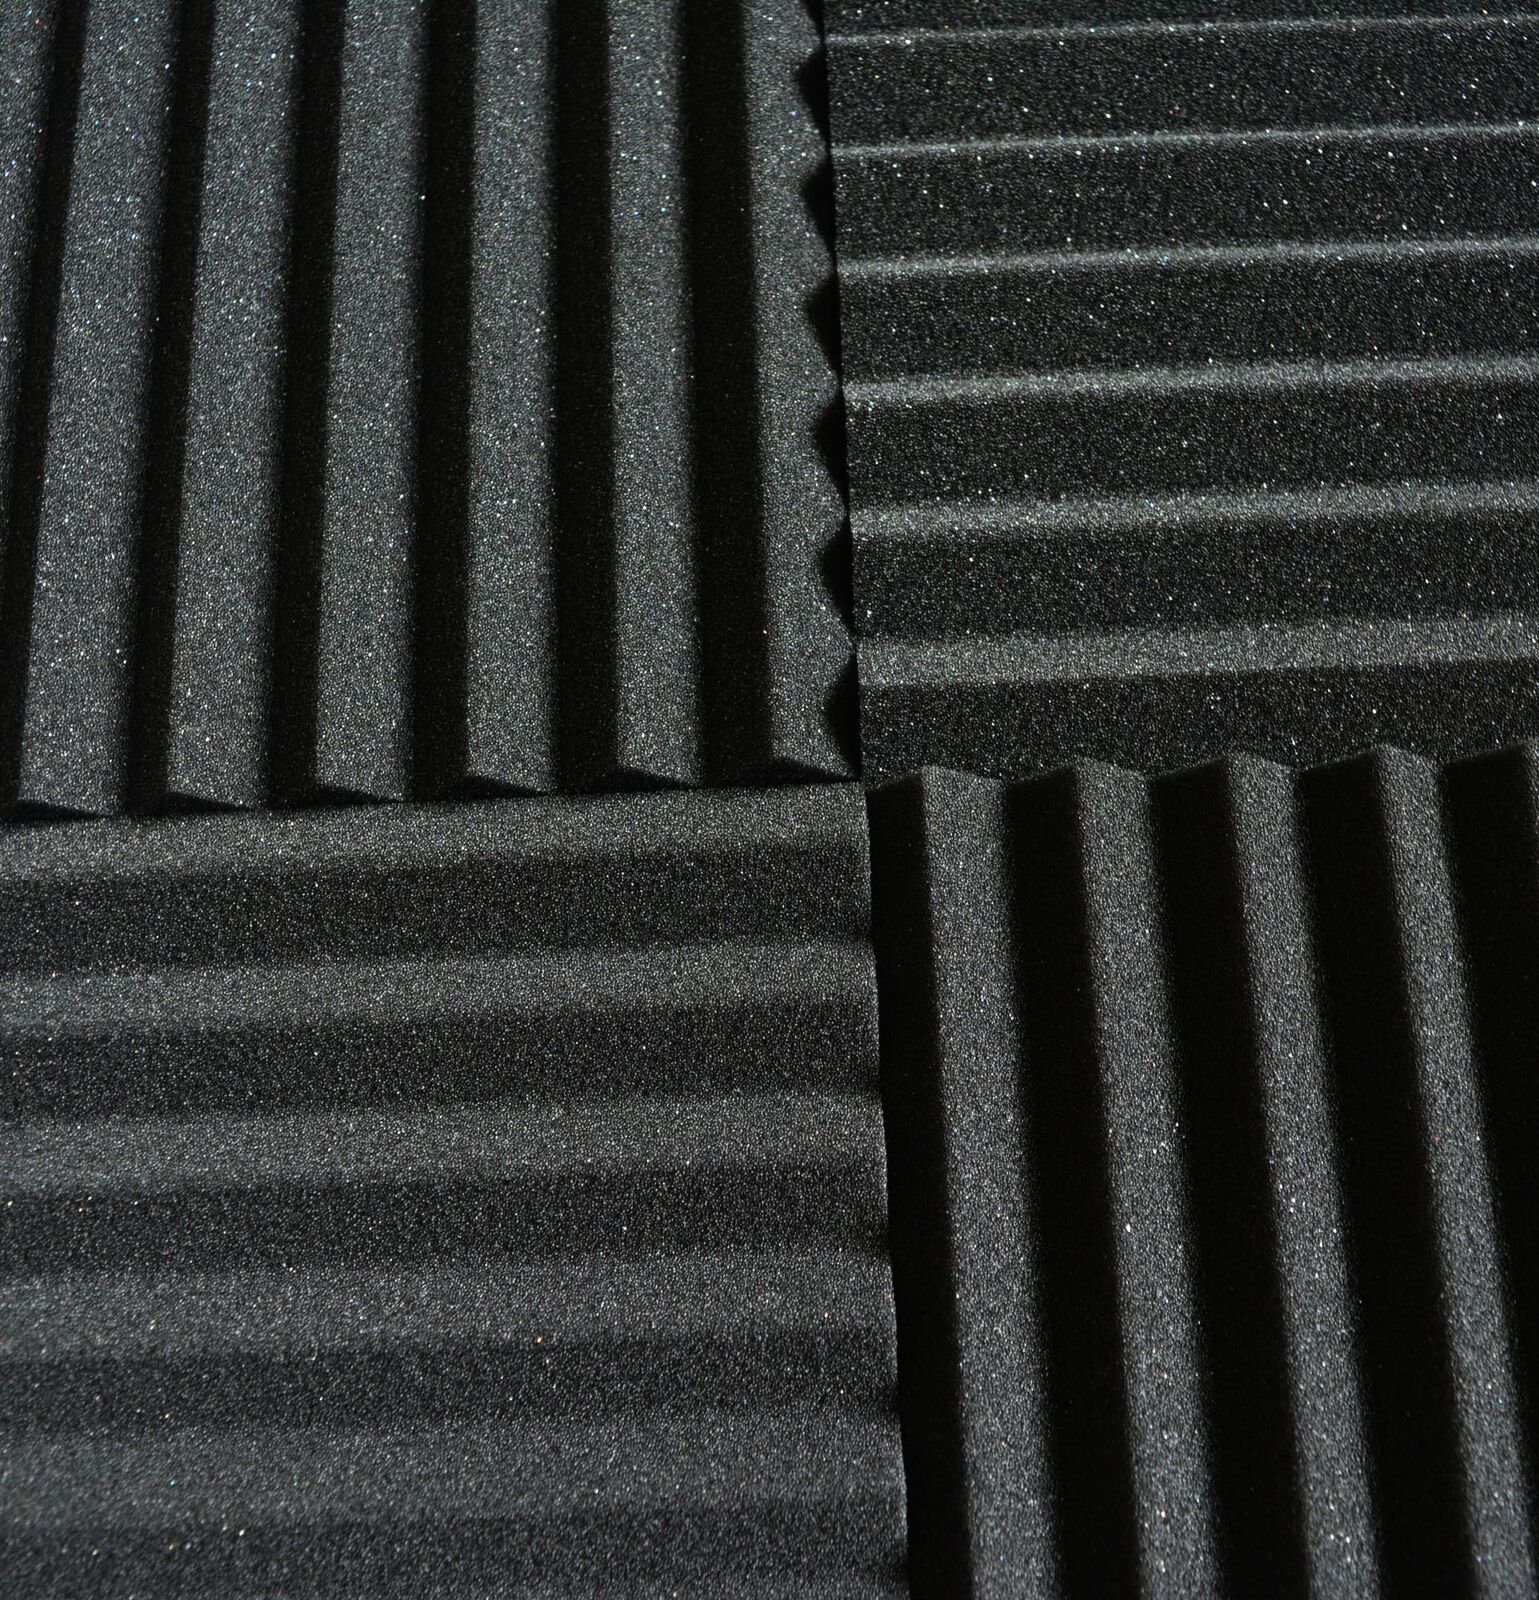 Triangular-Sound-Insulation-Cotton-KTV-Muffler-Sponge-Sound-Insulation-Foam-Pad-Wall-Sound-Absorptio-1748913